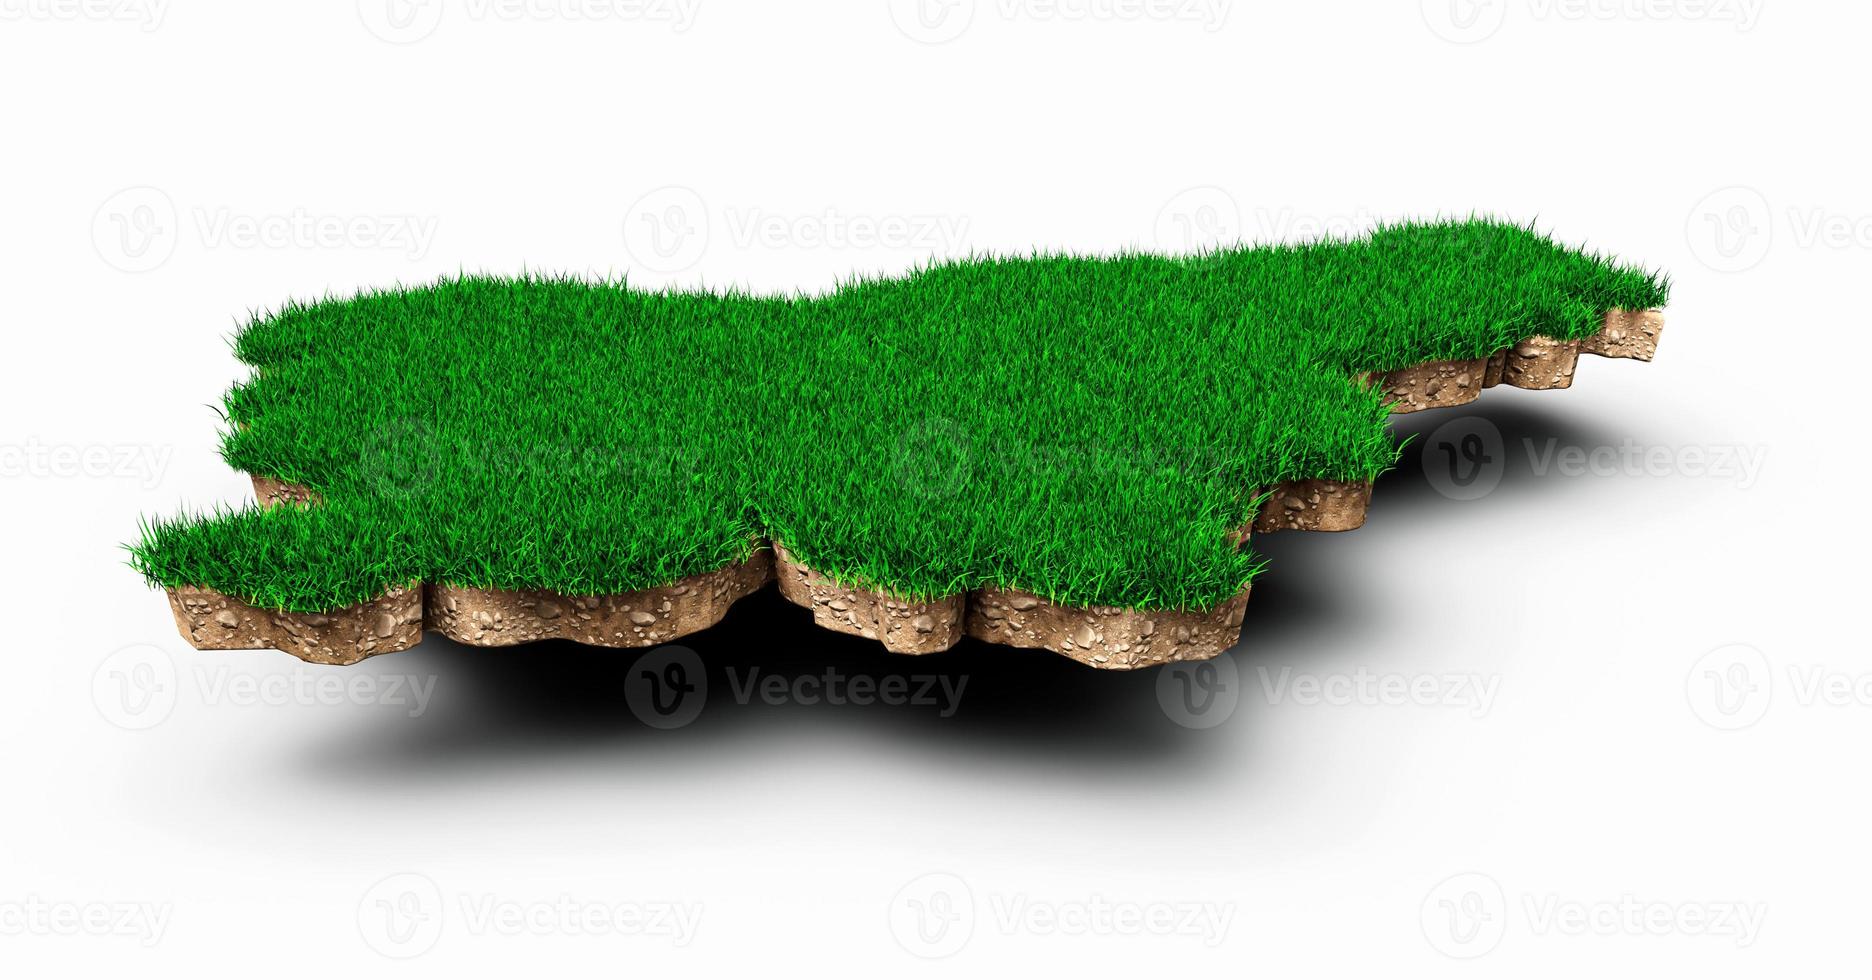 eslovenia mapa suelo tierra geología sección transversal con hierba verde y roca suelo textura 3d ilustración foto